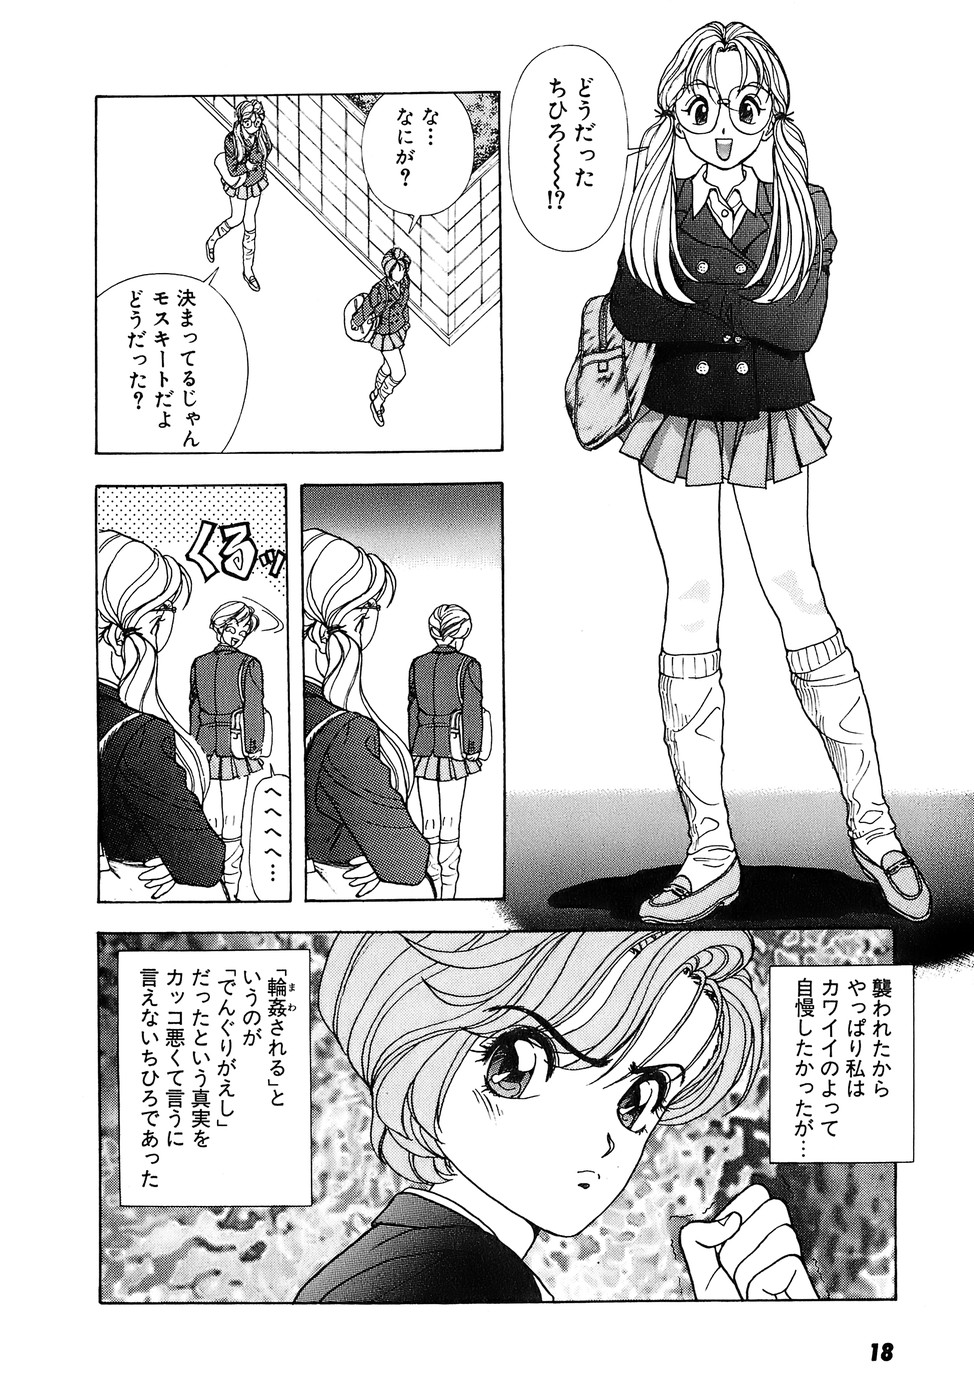 [U-Jin] Kanojo no Inbou 2 - Conspiracy 2 page 19 full